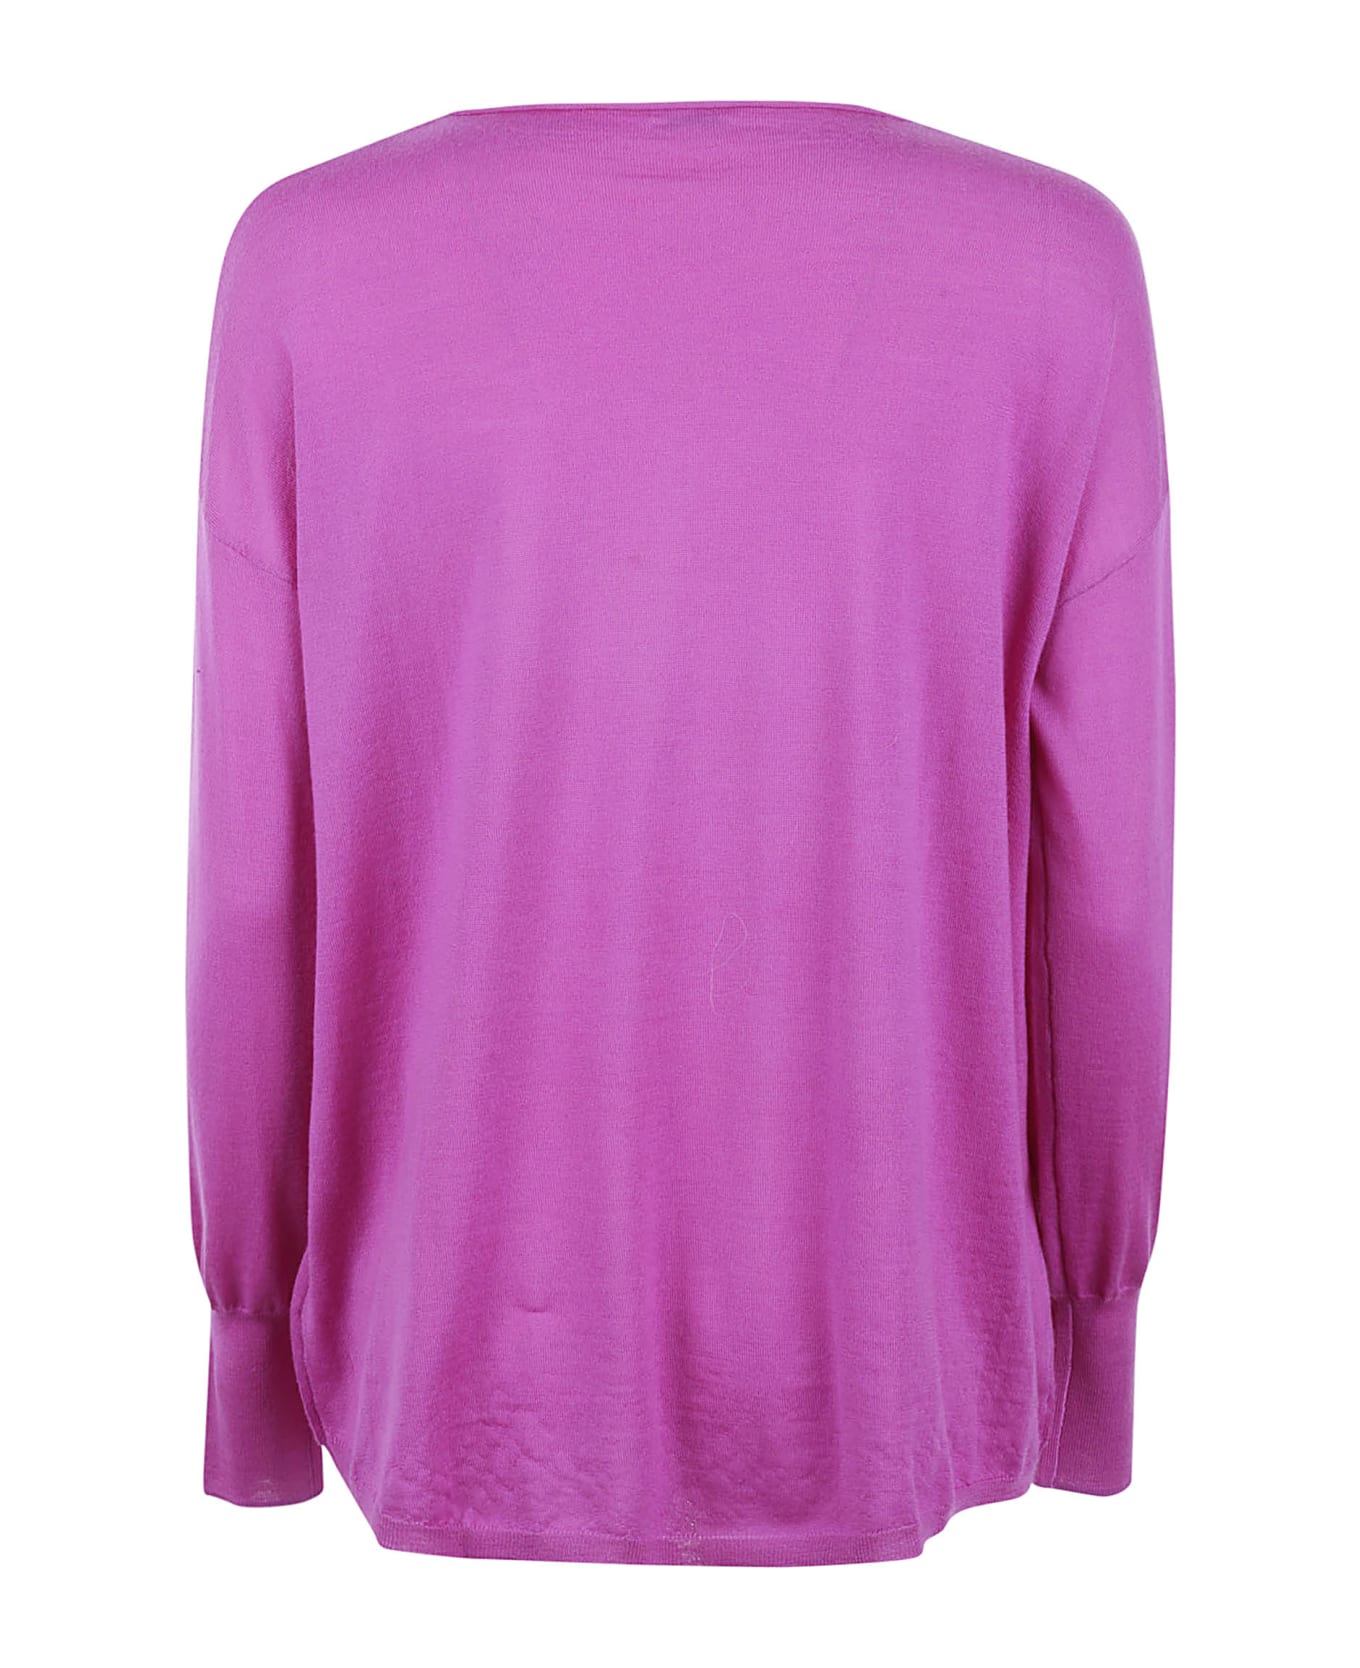 Aspesi Slim Fit Plain Sweater - Fuchsia ニットウェア